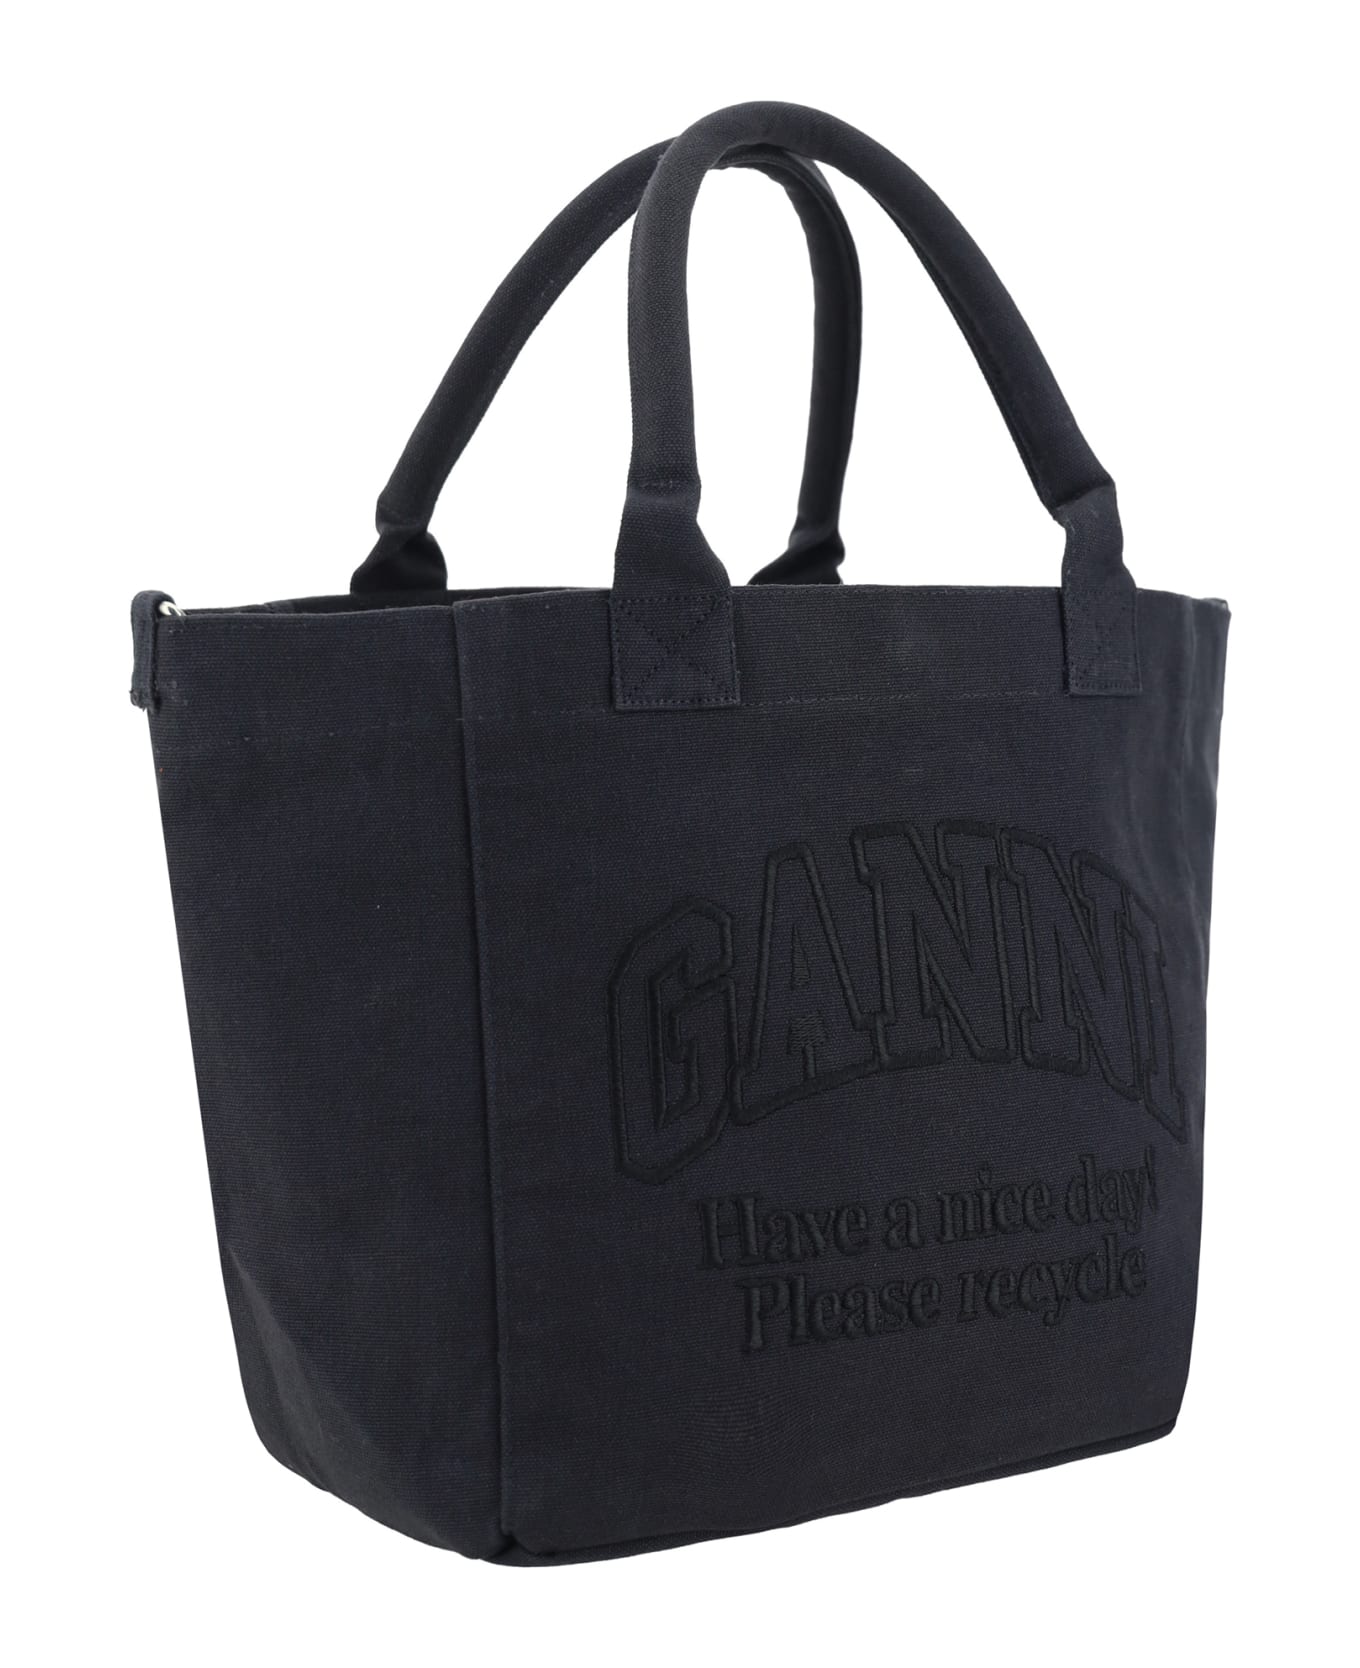 Ganni Handbag - Black